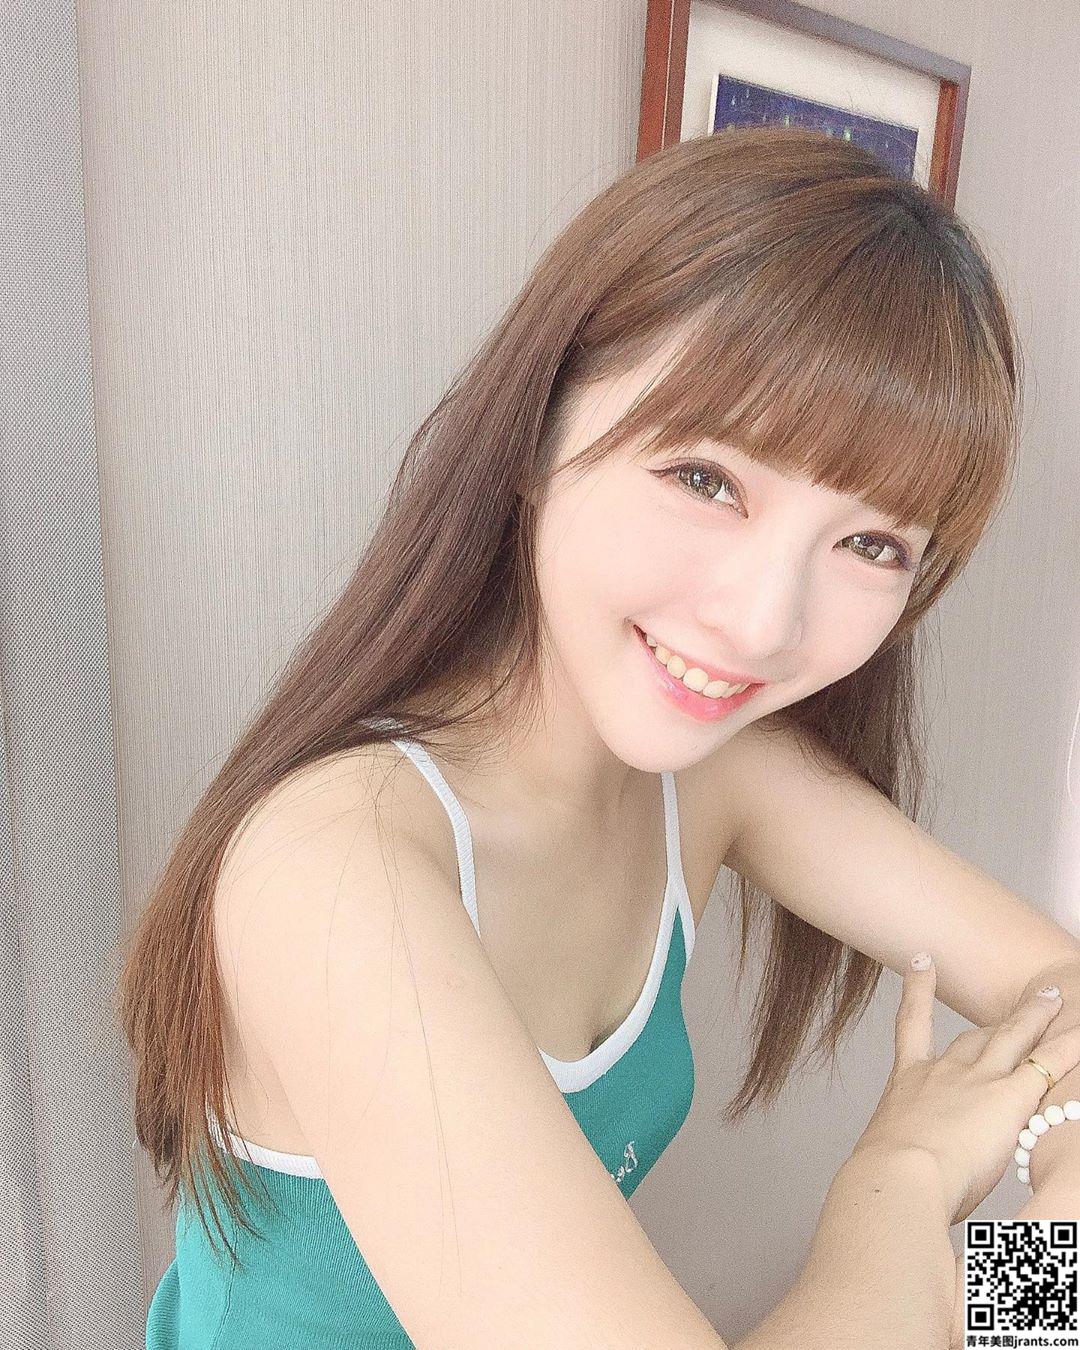 美女设计师夏咪天使笑容　小背心散发健康性感美态　 (31P)